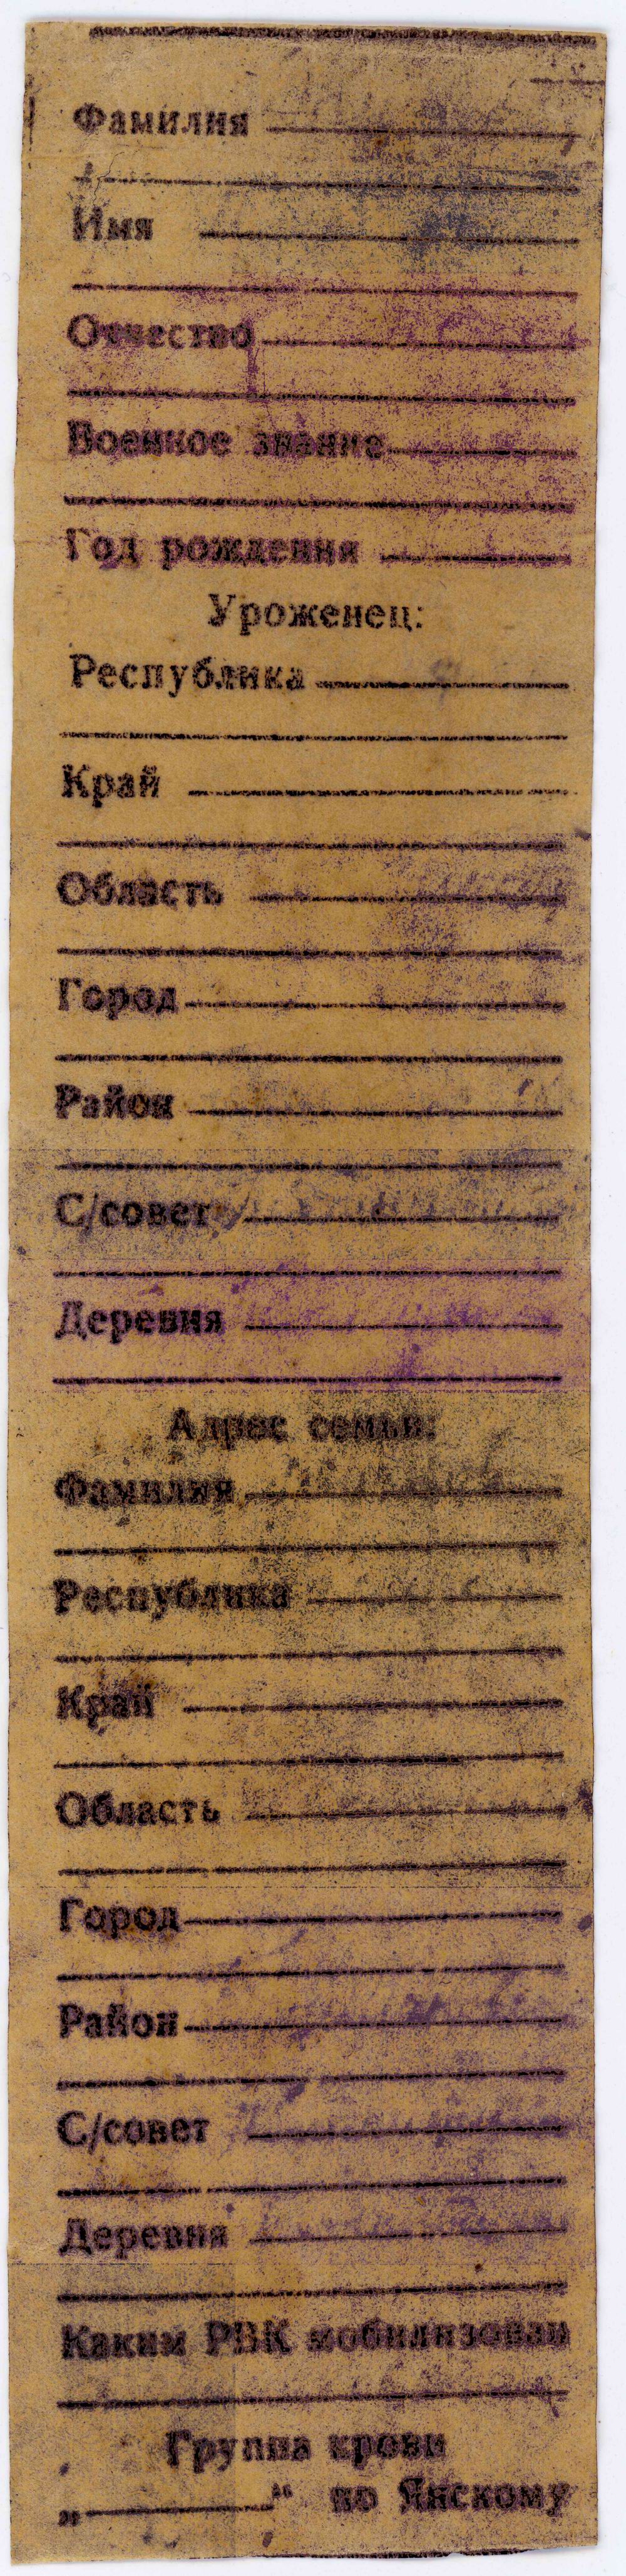 Медальон. Жучков Петр Максимович 1910 г.р., Пензенская обл.